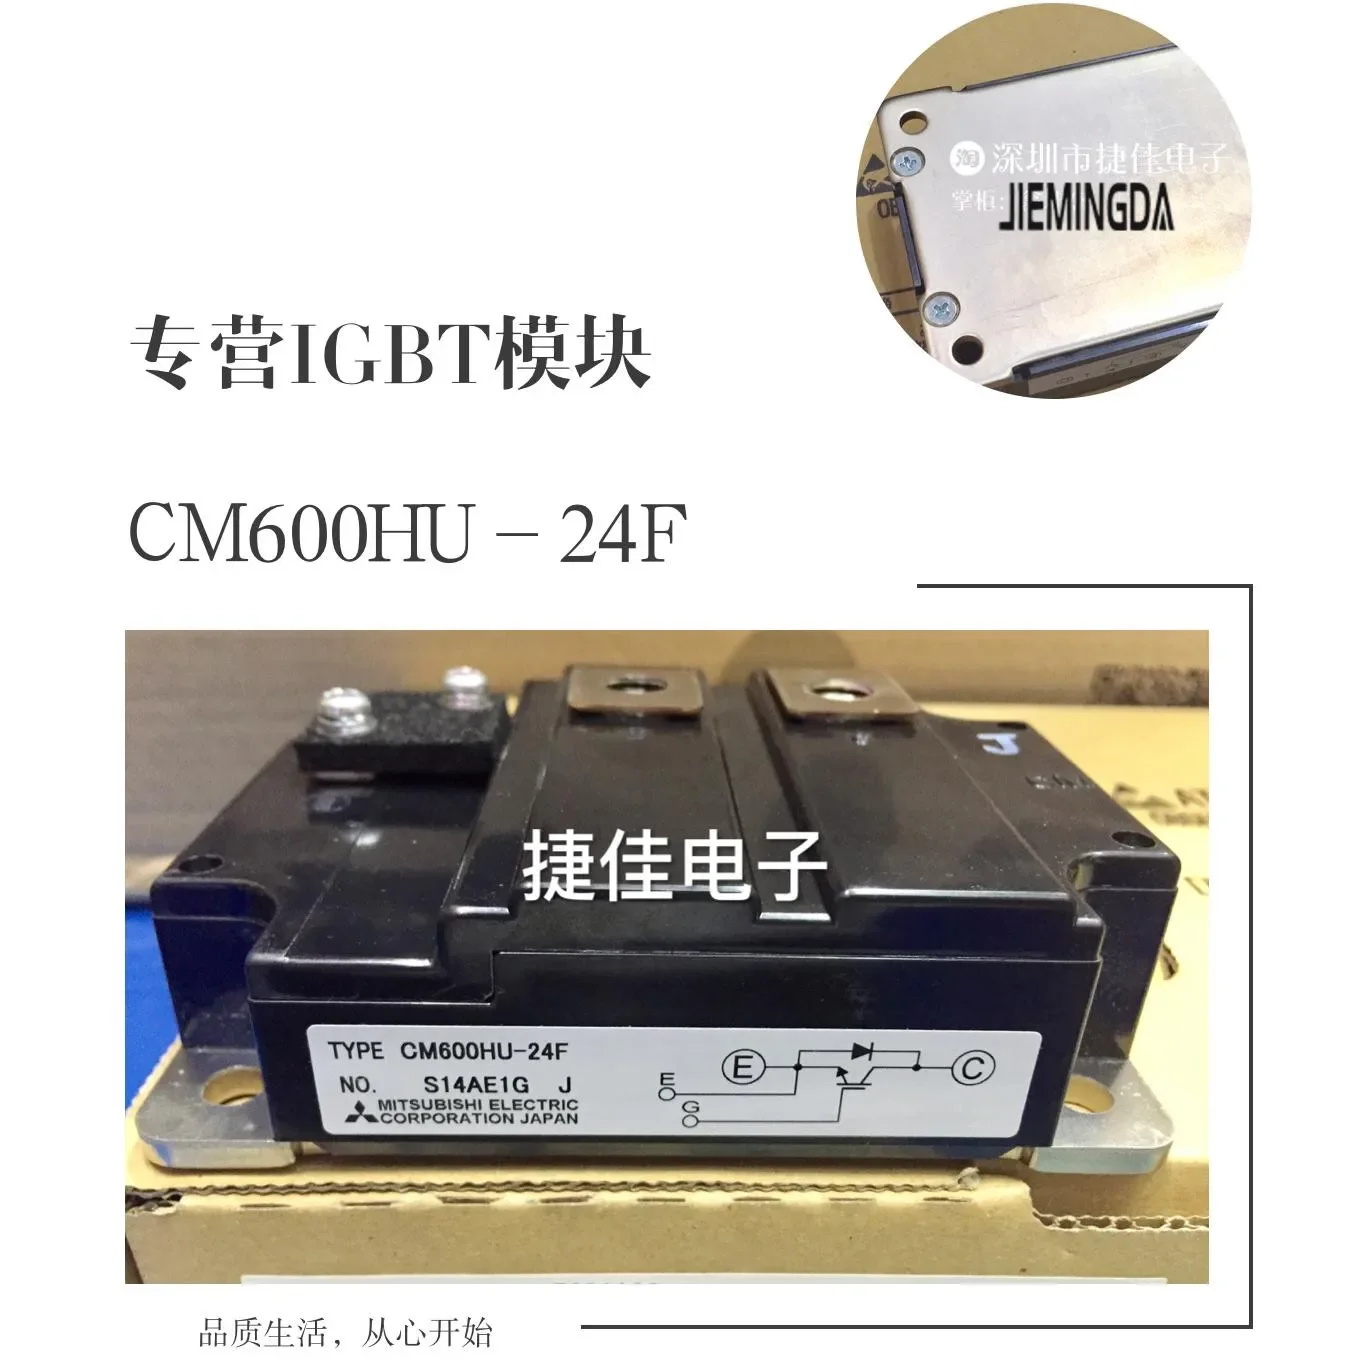 

CM400HU-24H CM400HU-24F CM600HU-24F -24H CM800HUS-12H 100% new and original